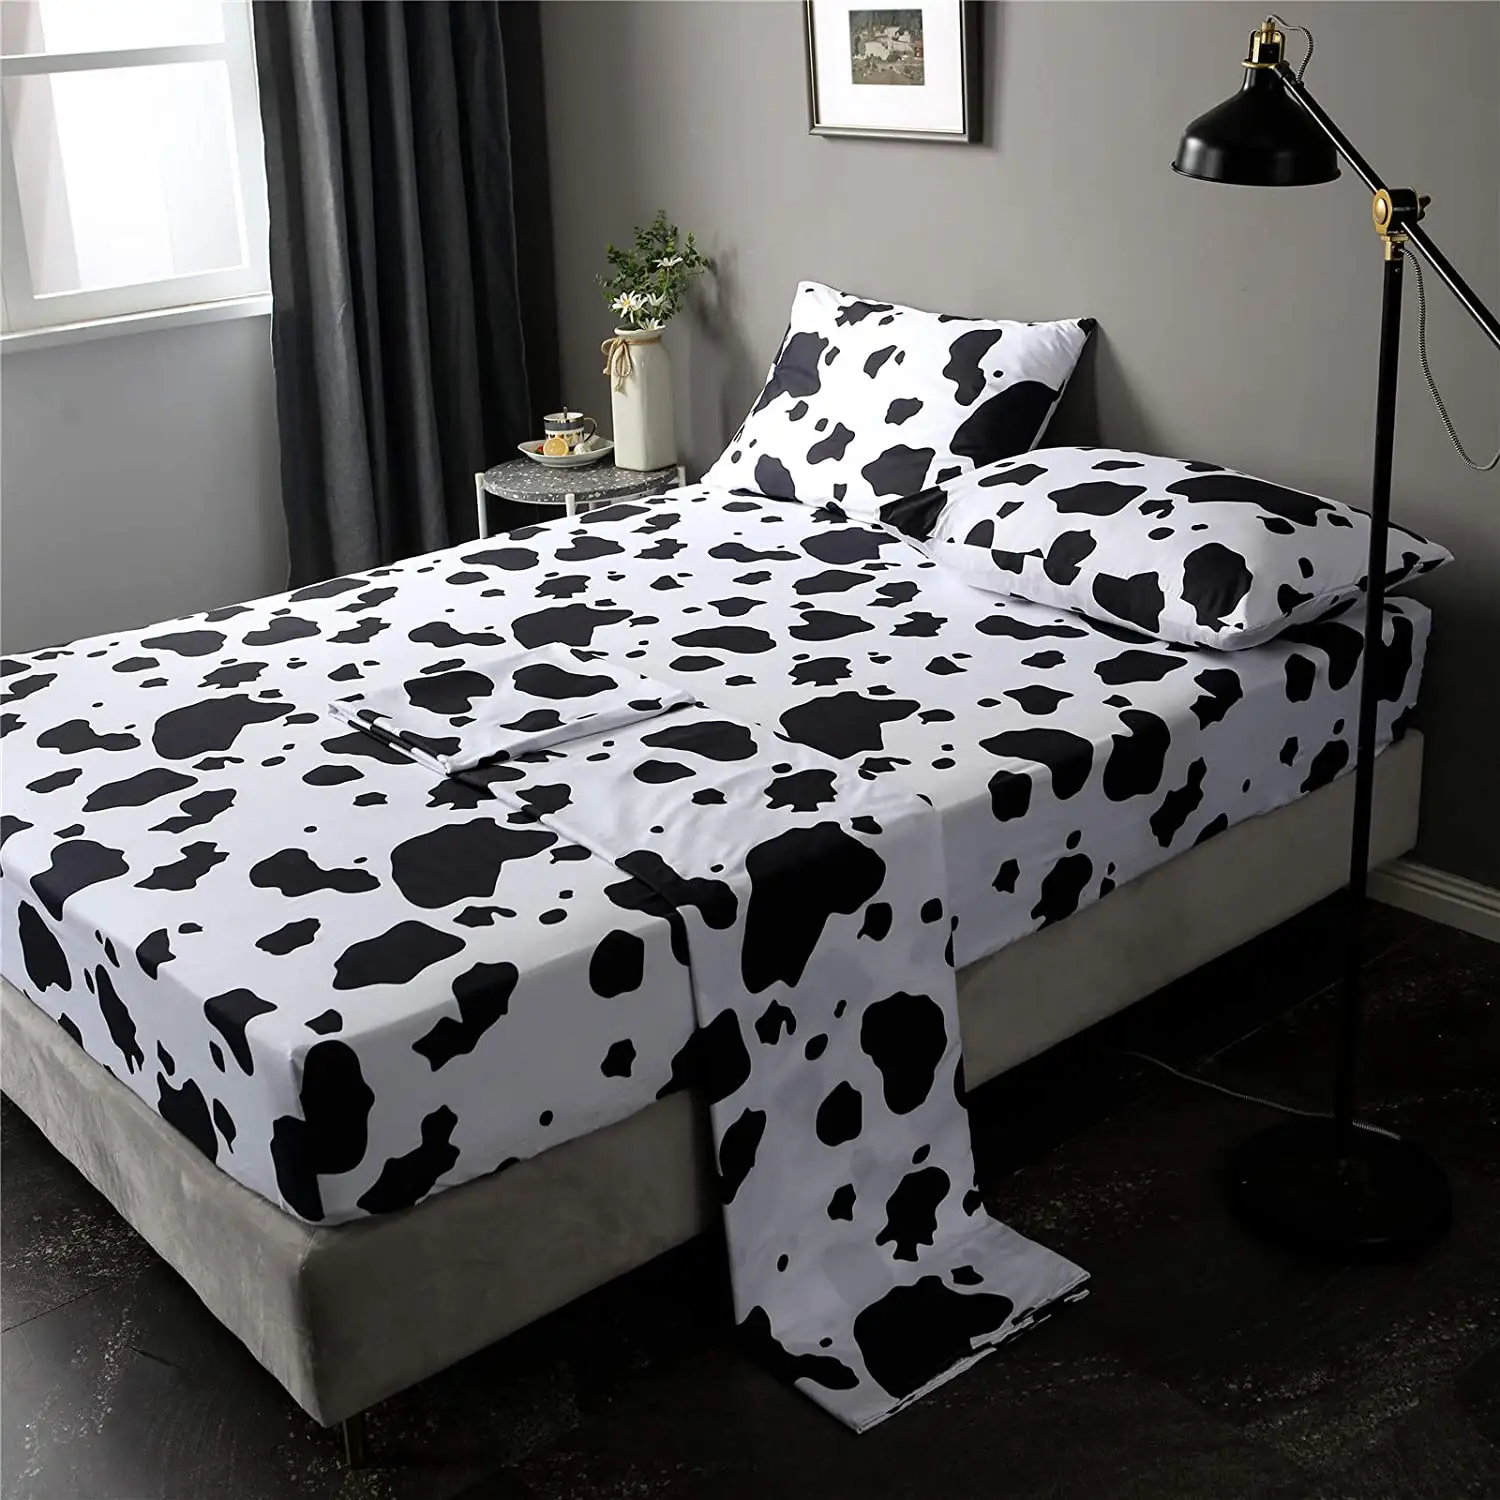 Bedding Set 4pcs Quilted Comforter Bed Sheet Sets 100% Microfiber Duvet Cover Set Printed Plain 4 Pcs Solid